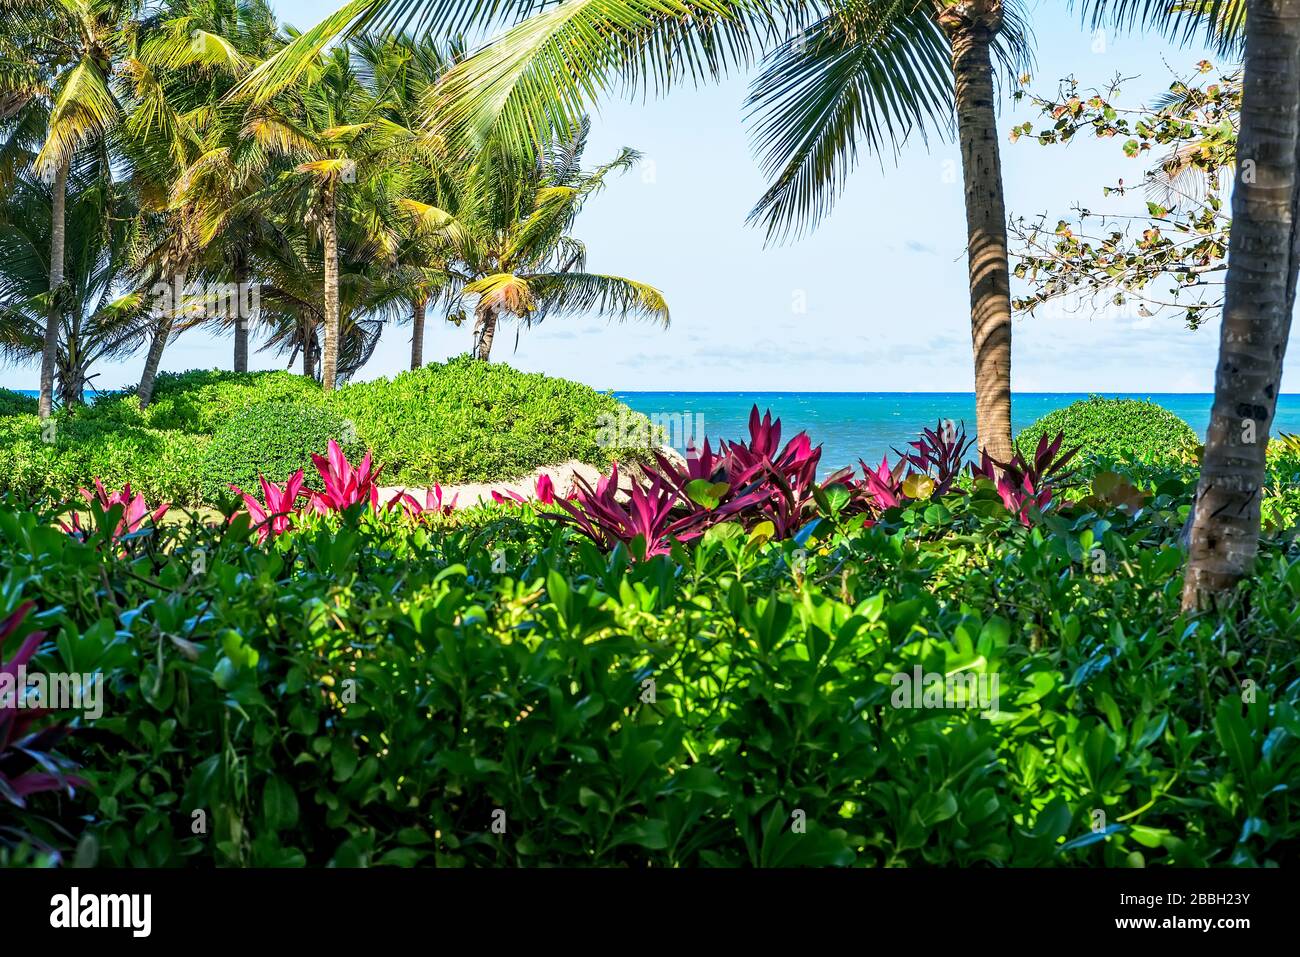 Végétation tropicale luxuriante sur l'île de Porto Rico et l'océan Atlantique Banque D'Images